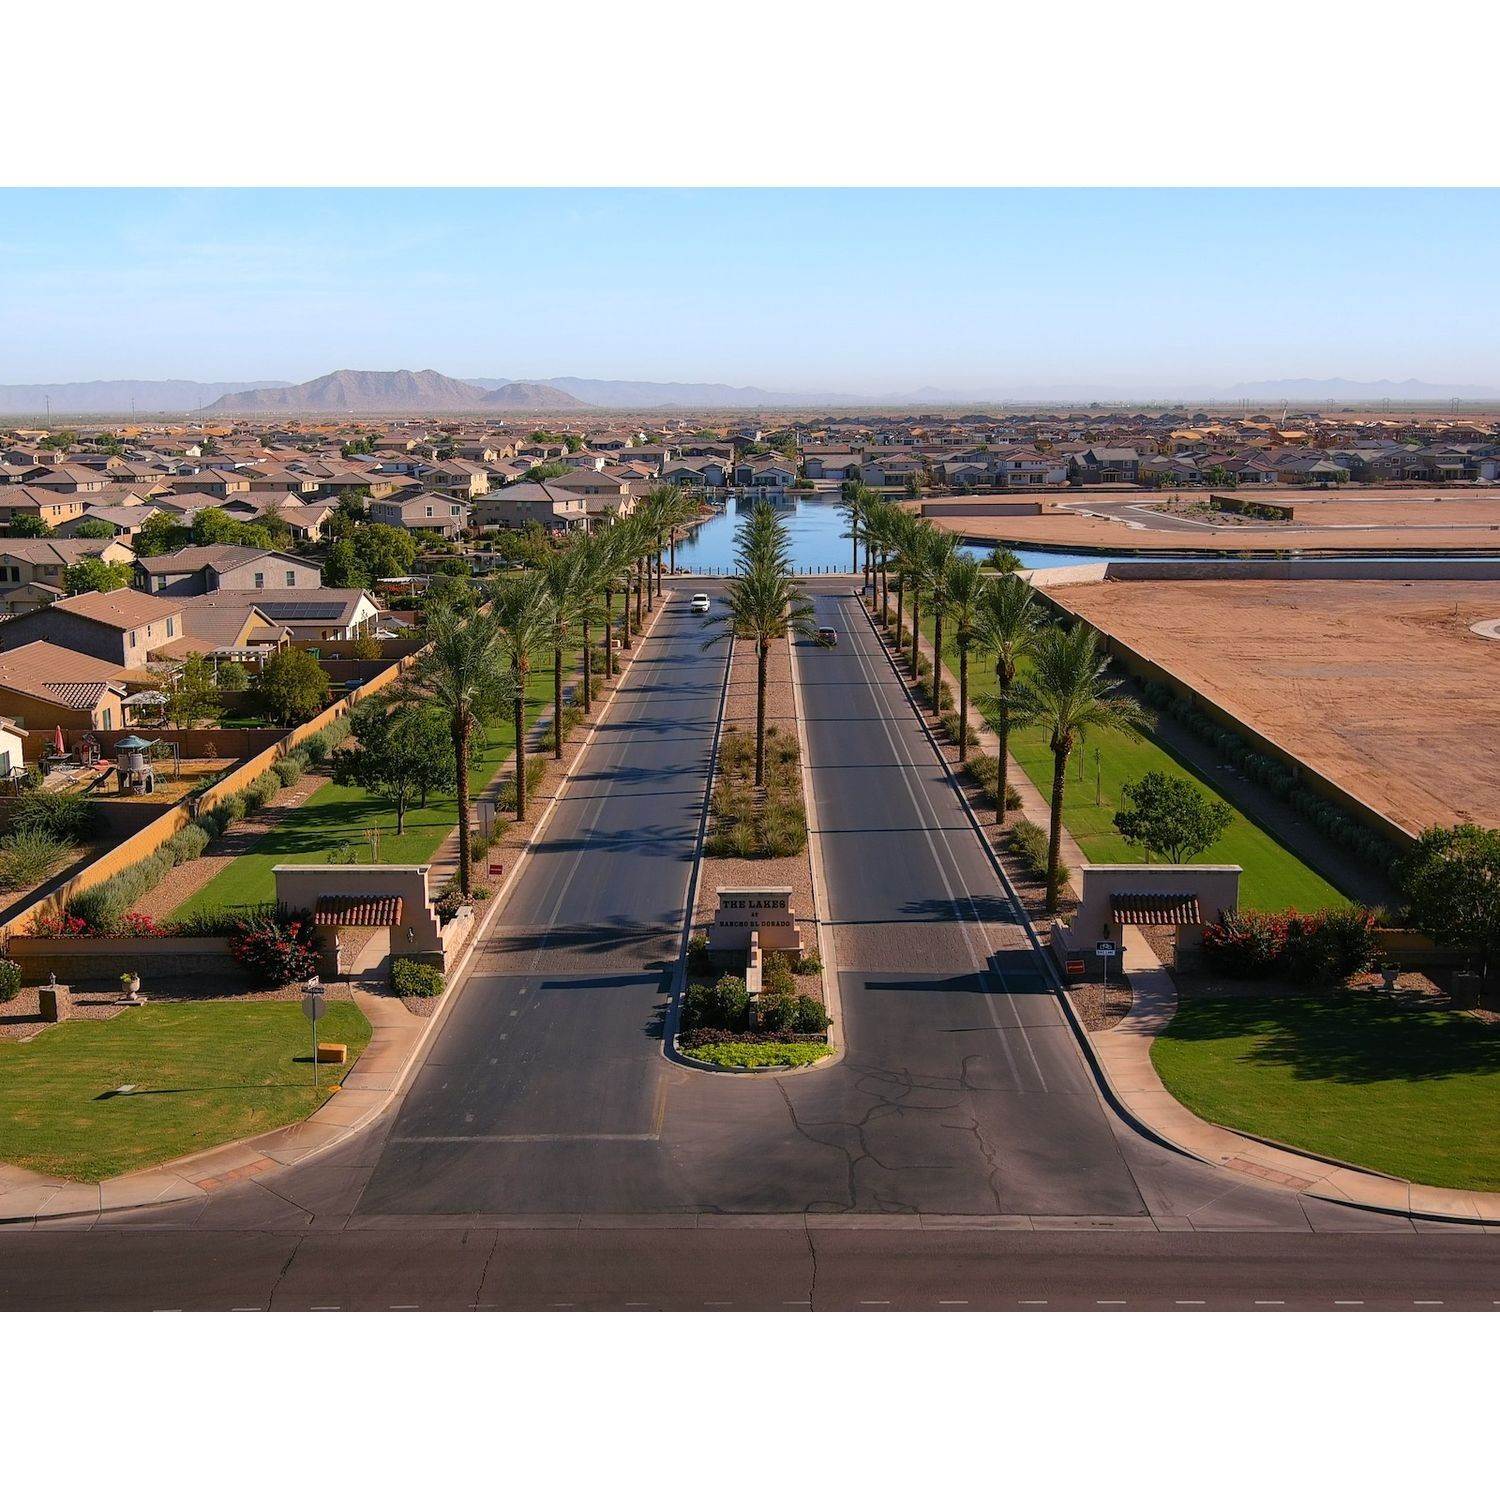 24. Villas at The Lakes at Rancho El Dorado building at 21780 N Lynn Street, Maricopa, AZ 85138